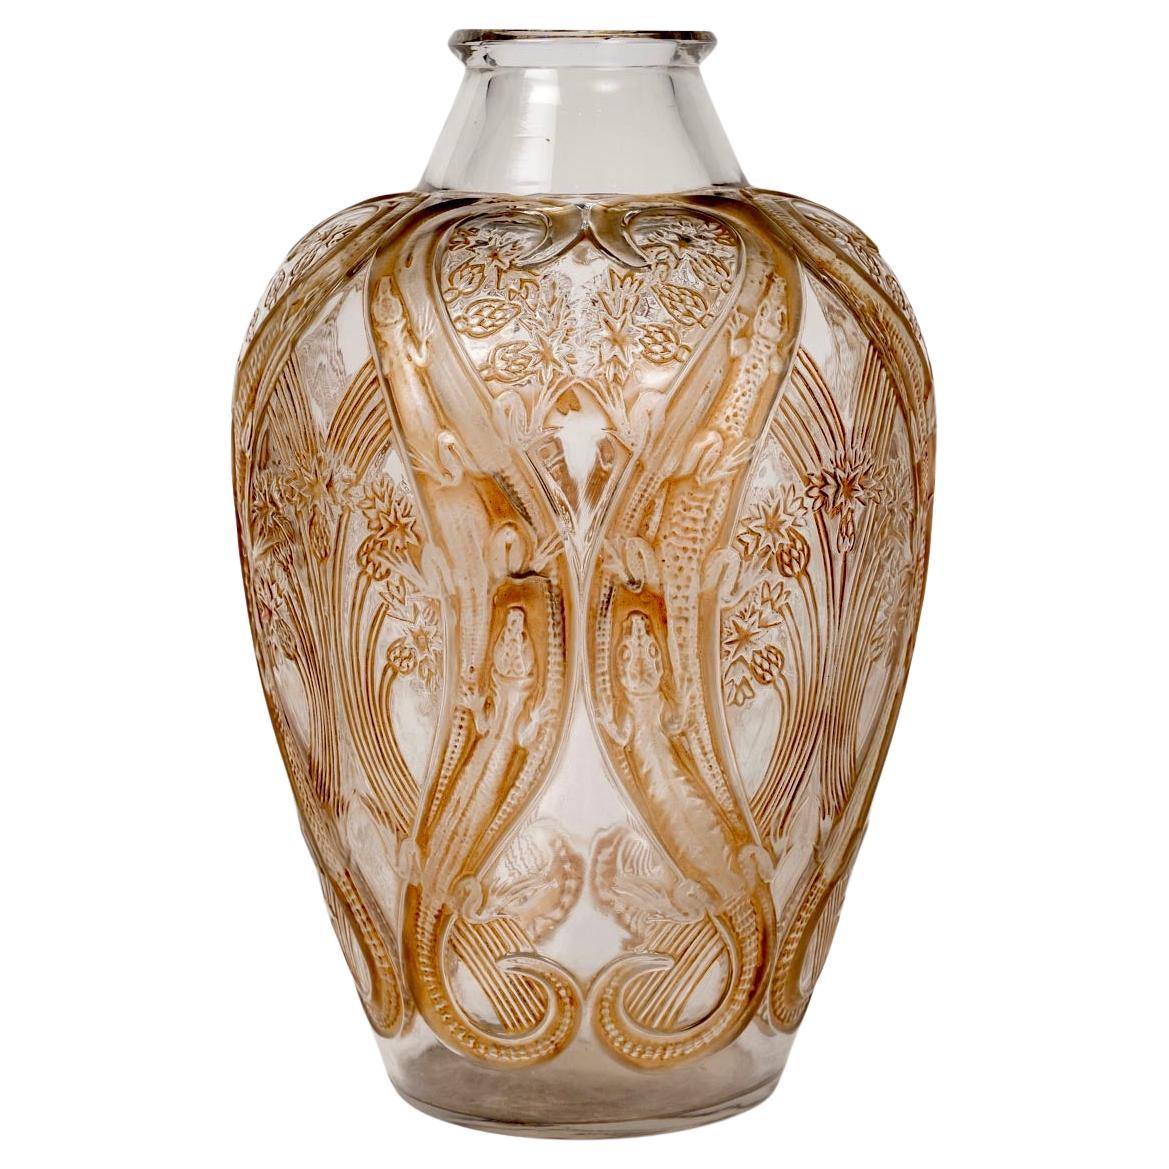 1913 Rene Lalique Vase Lezards et Bluets Glass with Sepia Patina